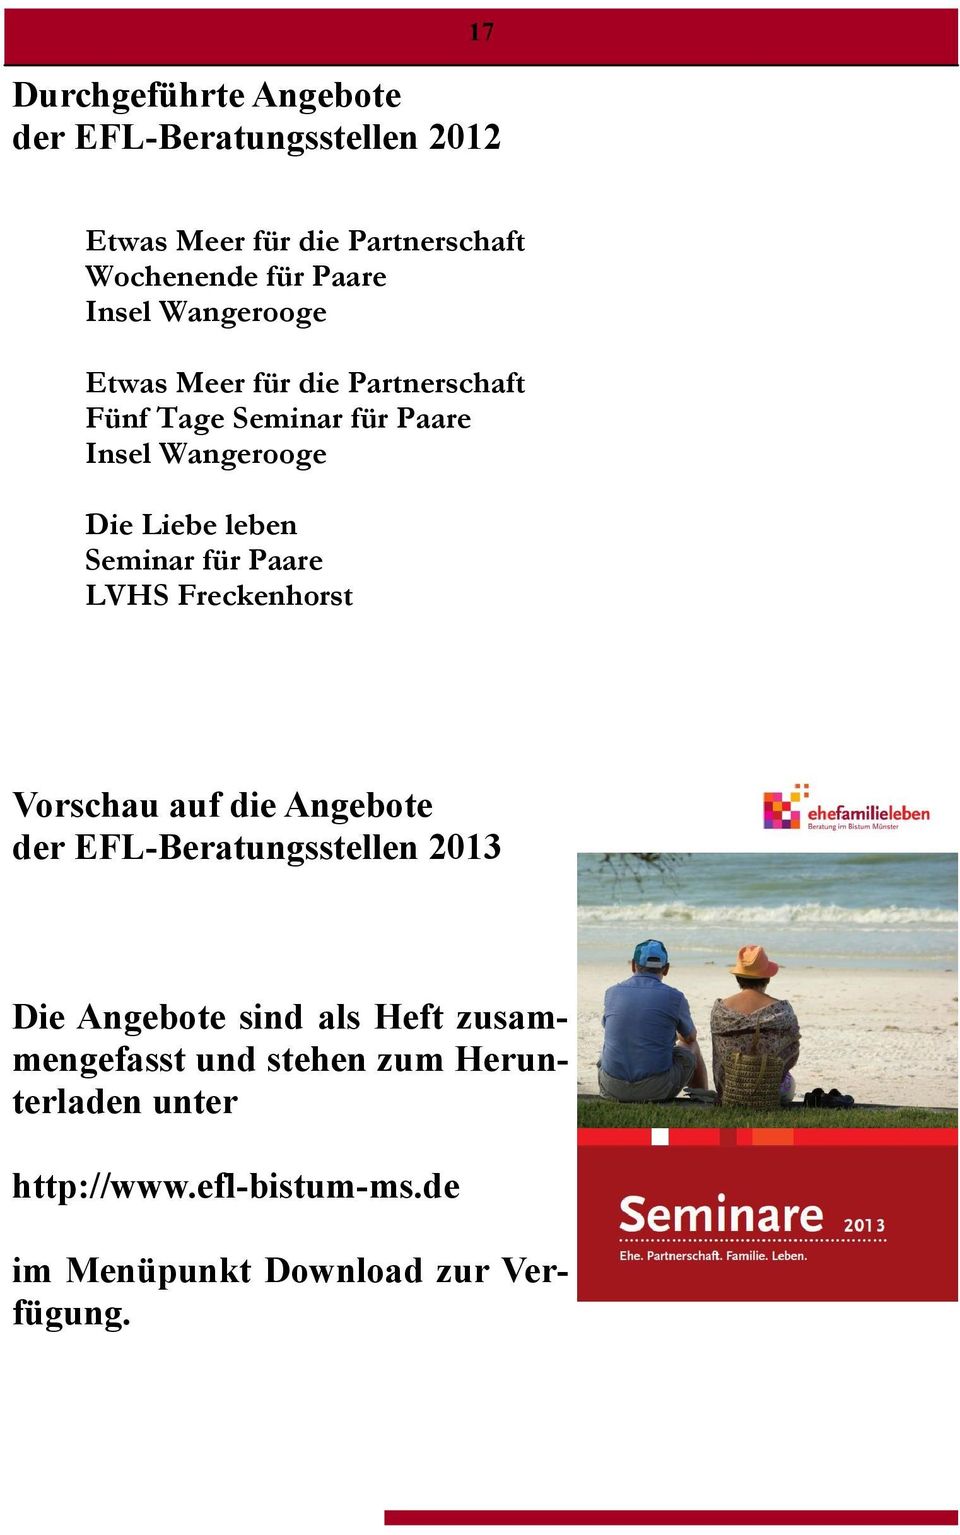 Seminar für Paare LVHS Freckenhorst Vorschau auf die Angebote der EFL-Beratungsstellen 2013 Die Angebote sind als